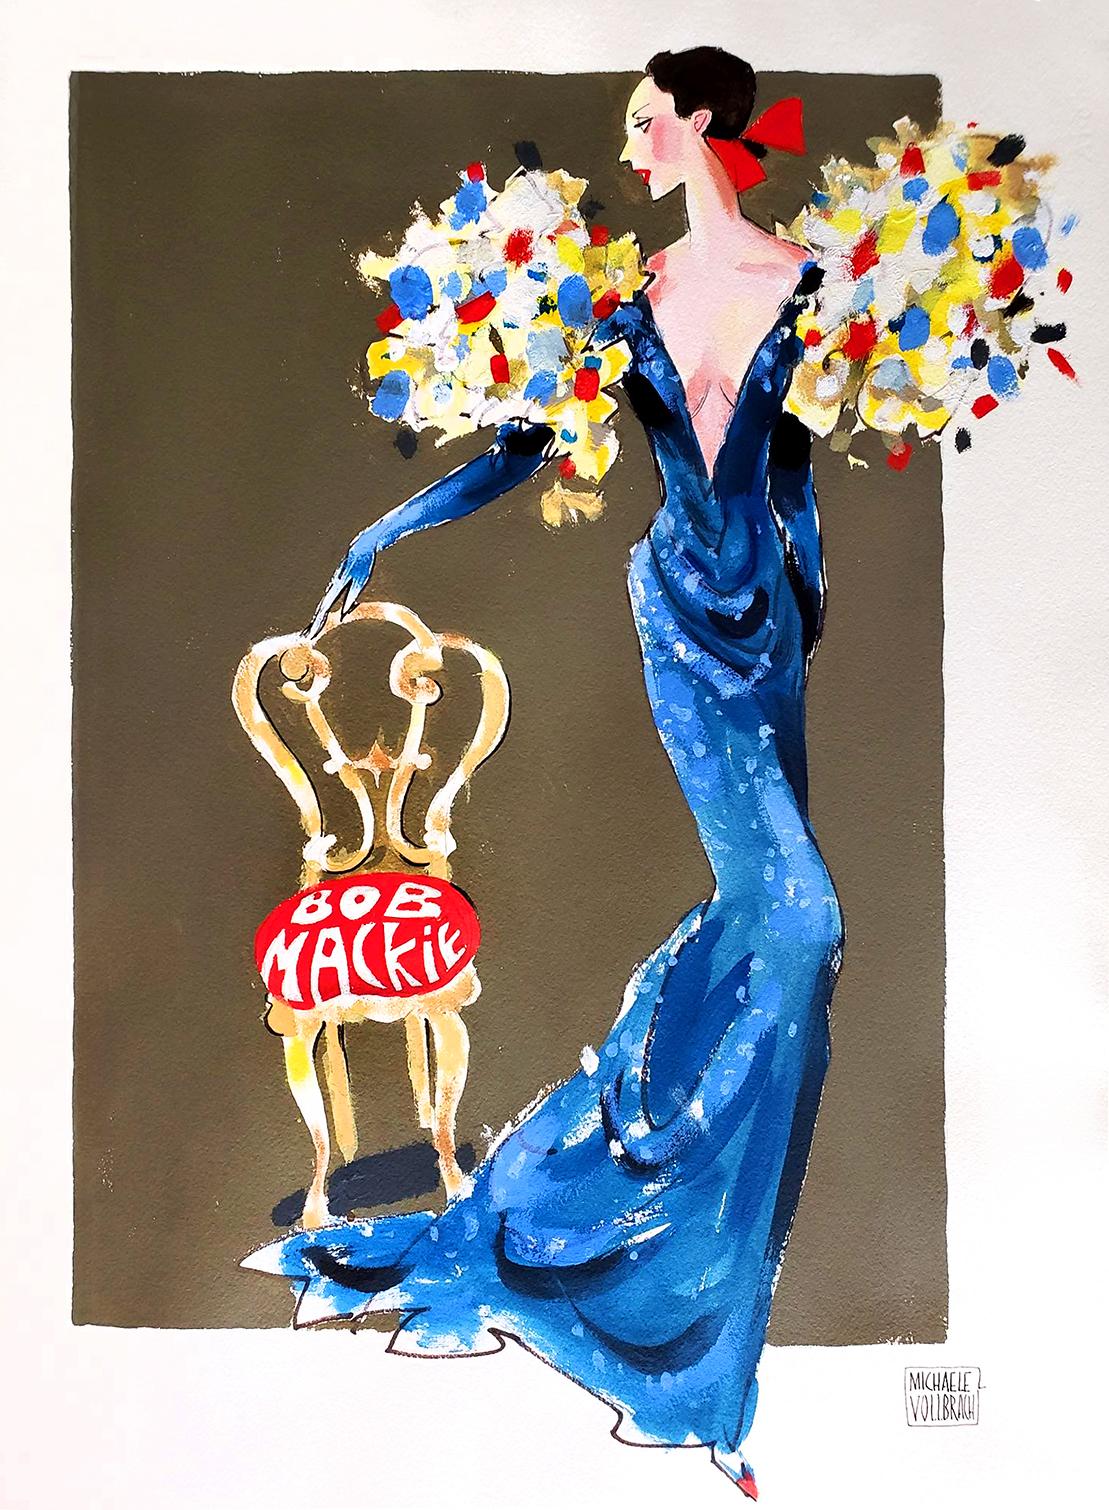 Michaele Vollbracht Portrait Painting – Modeillustration einer eleganten Frau in Bob Mackie-Kleid, vielleicht für Cher